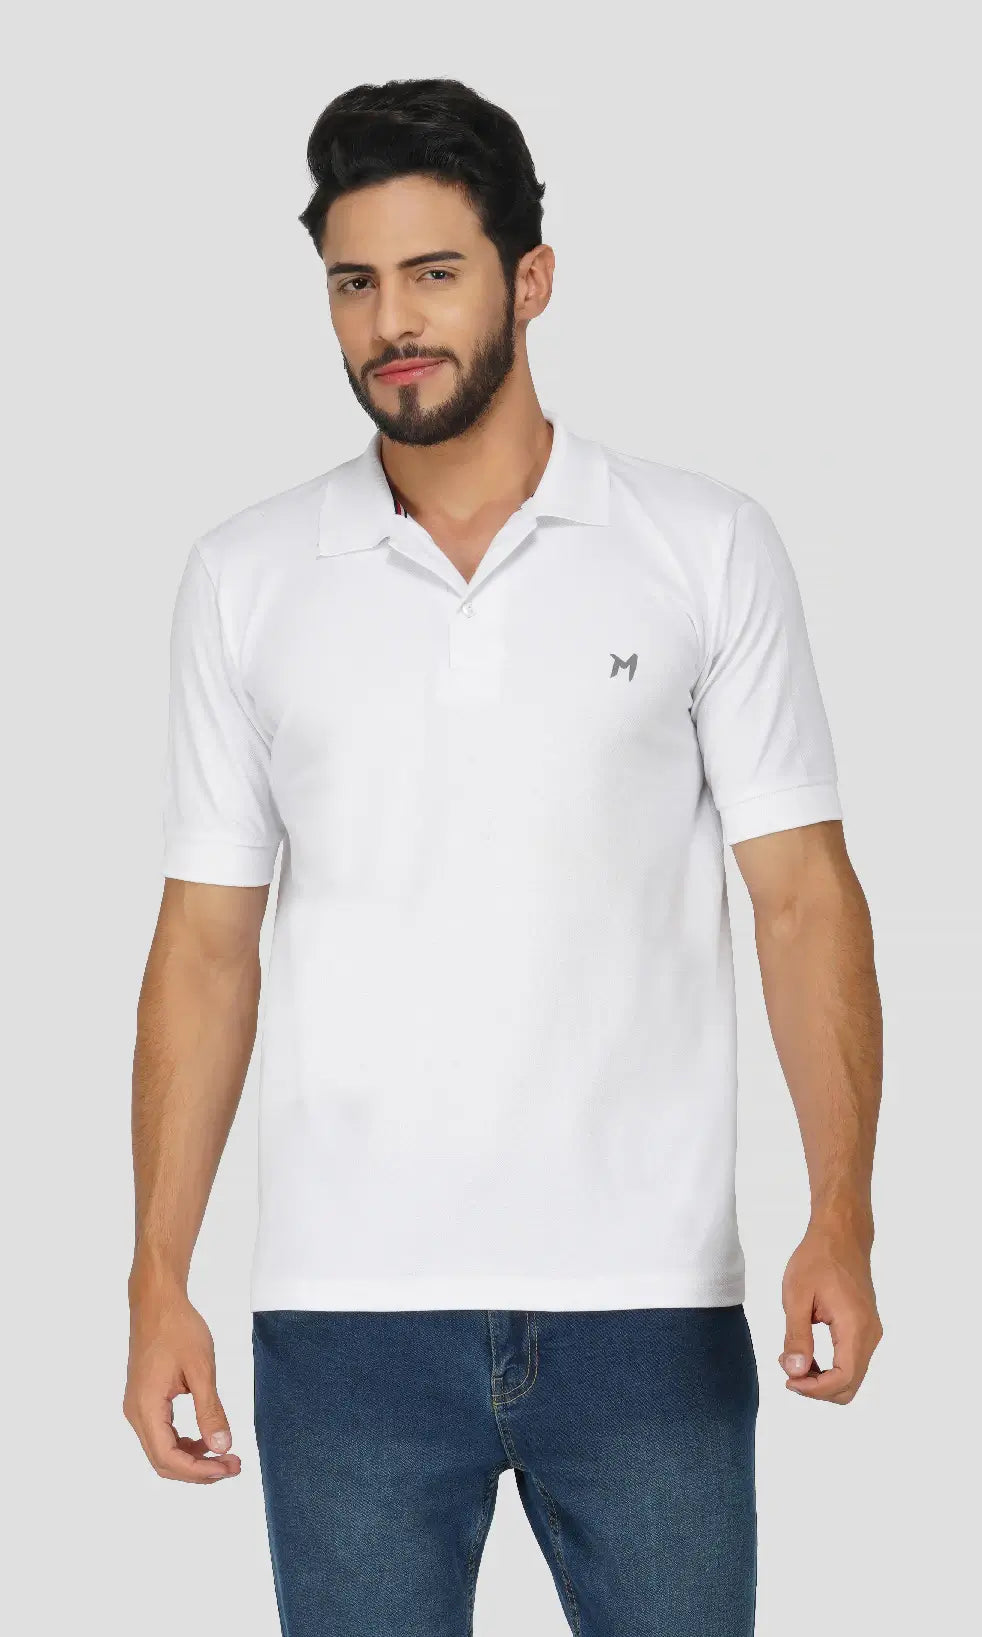 Mebadass Cotton Men's Plain Polo Neck Collar T-shirt - White